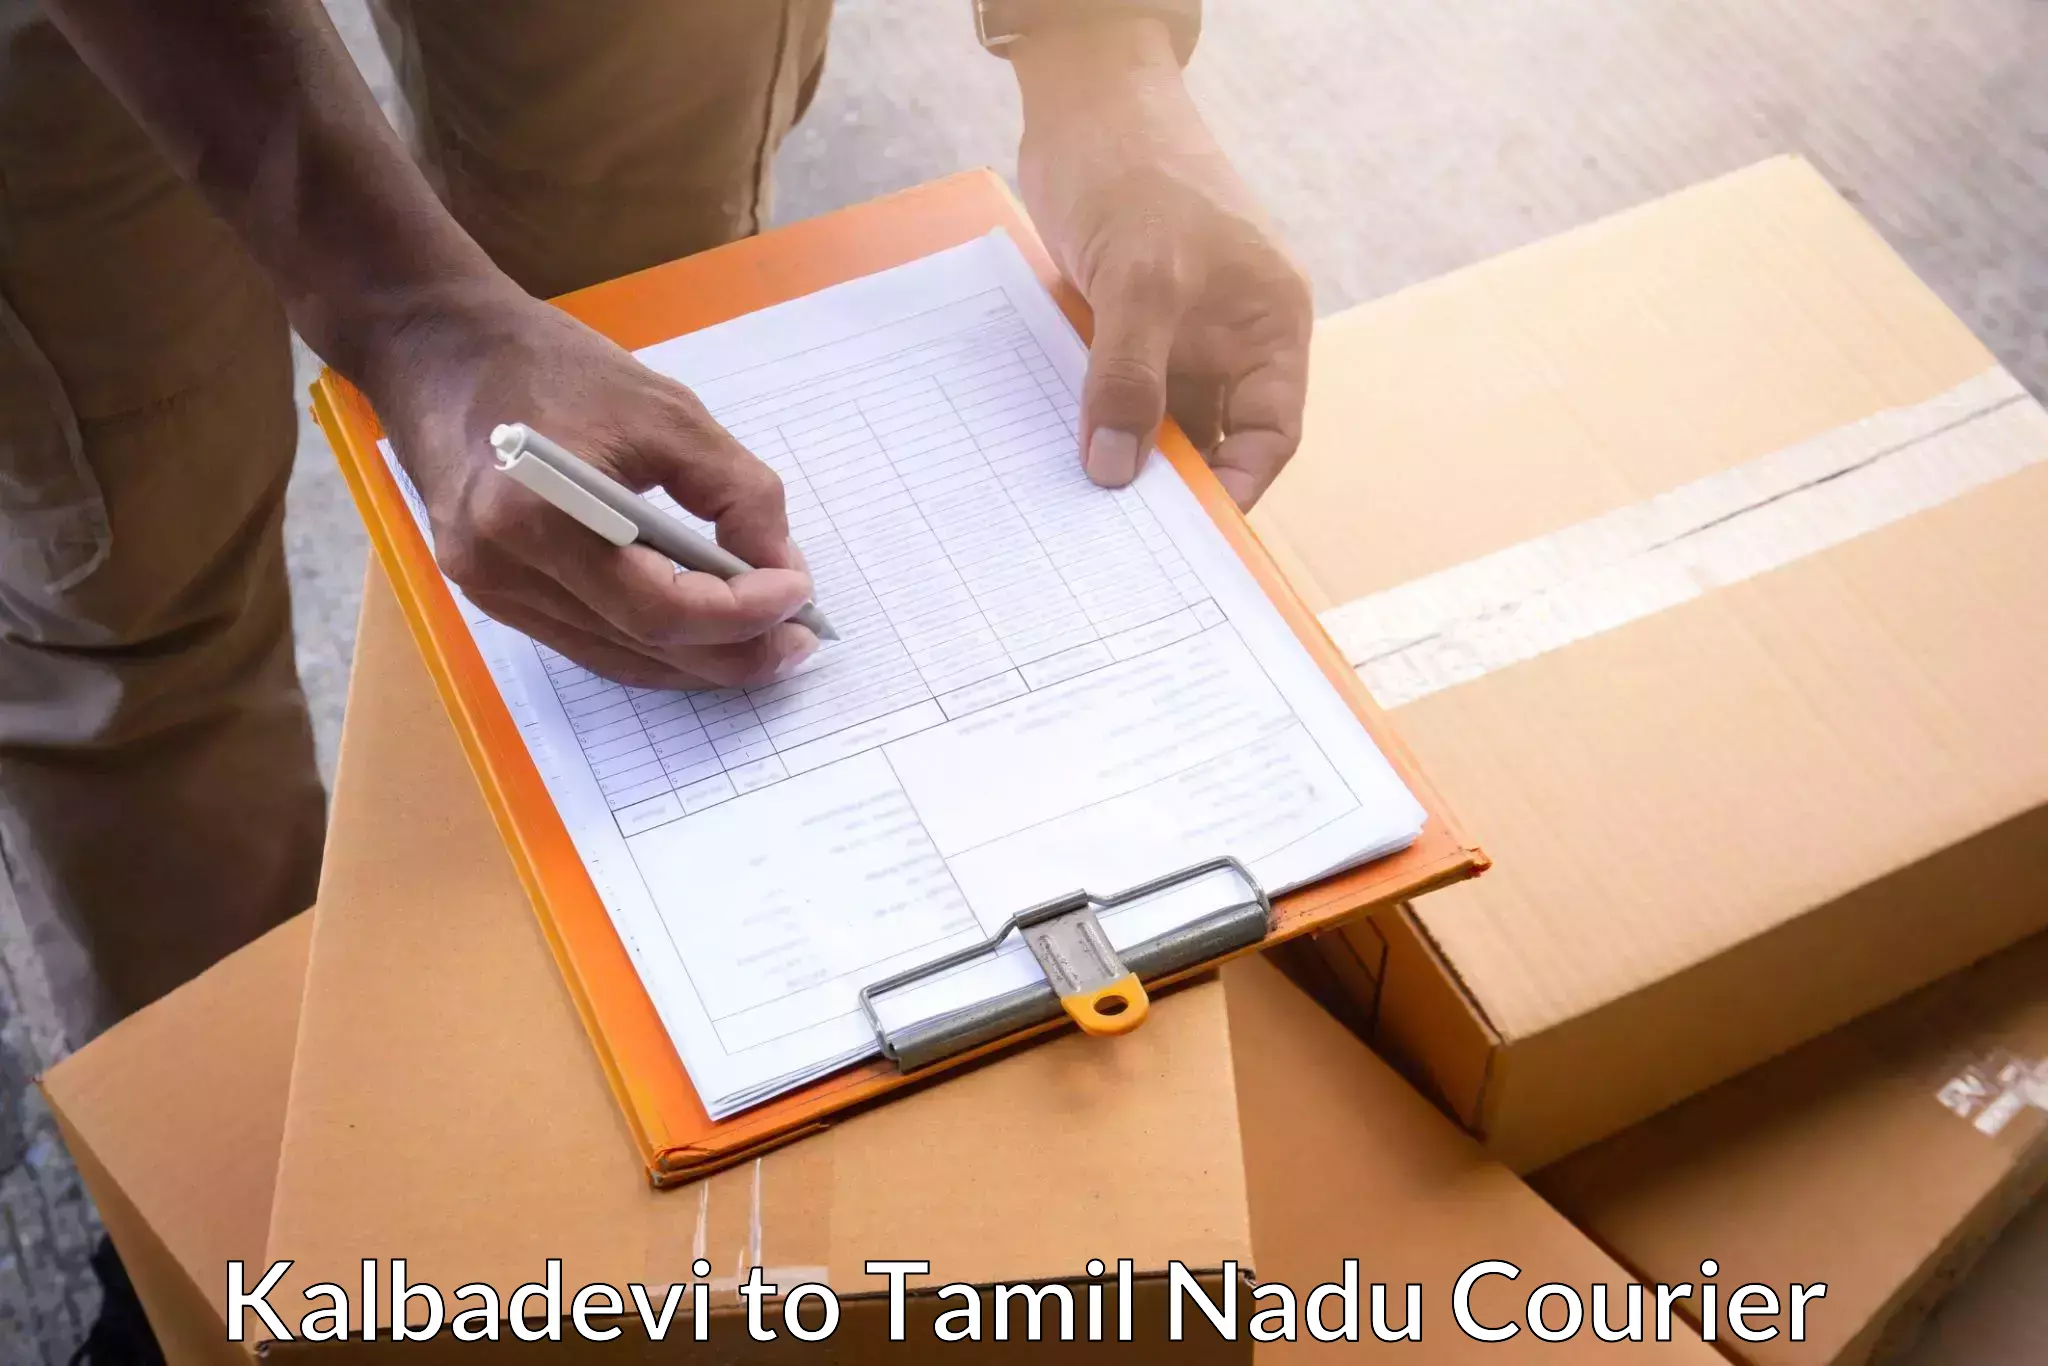 Courier membership in Kalbadevi to Rameswaram